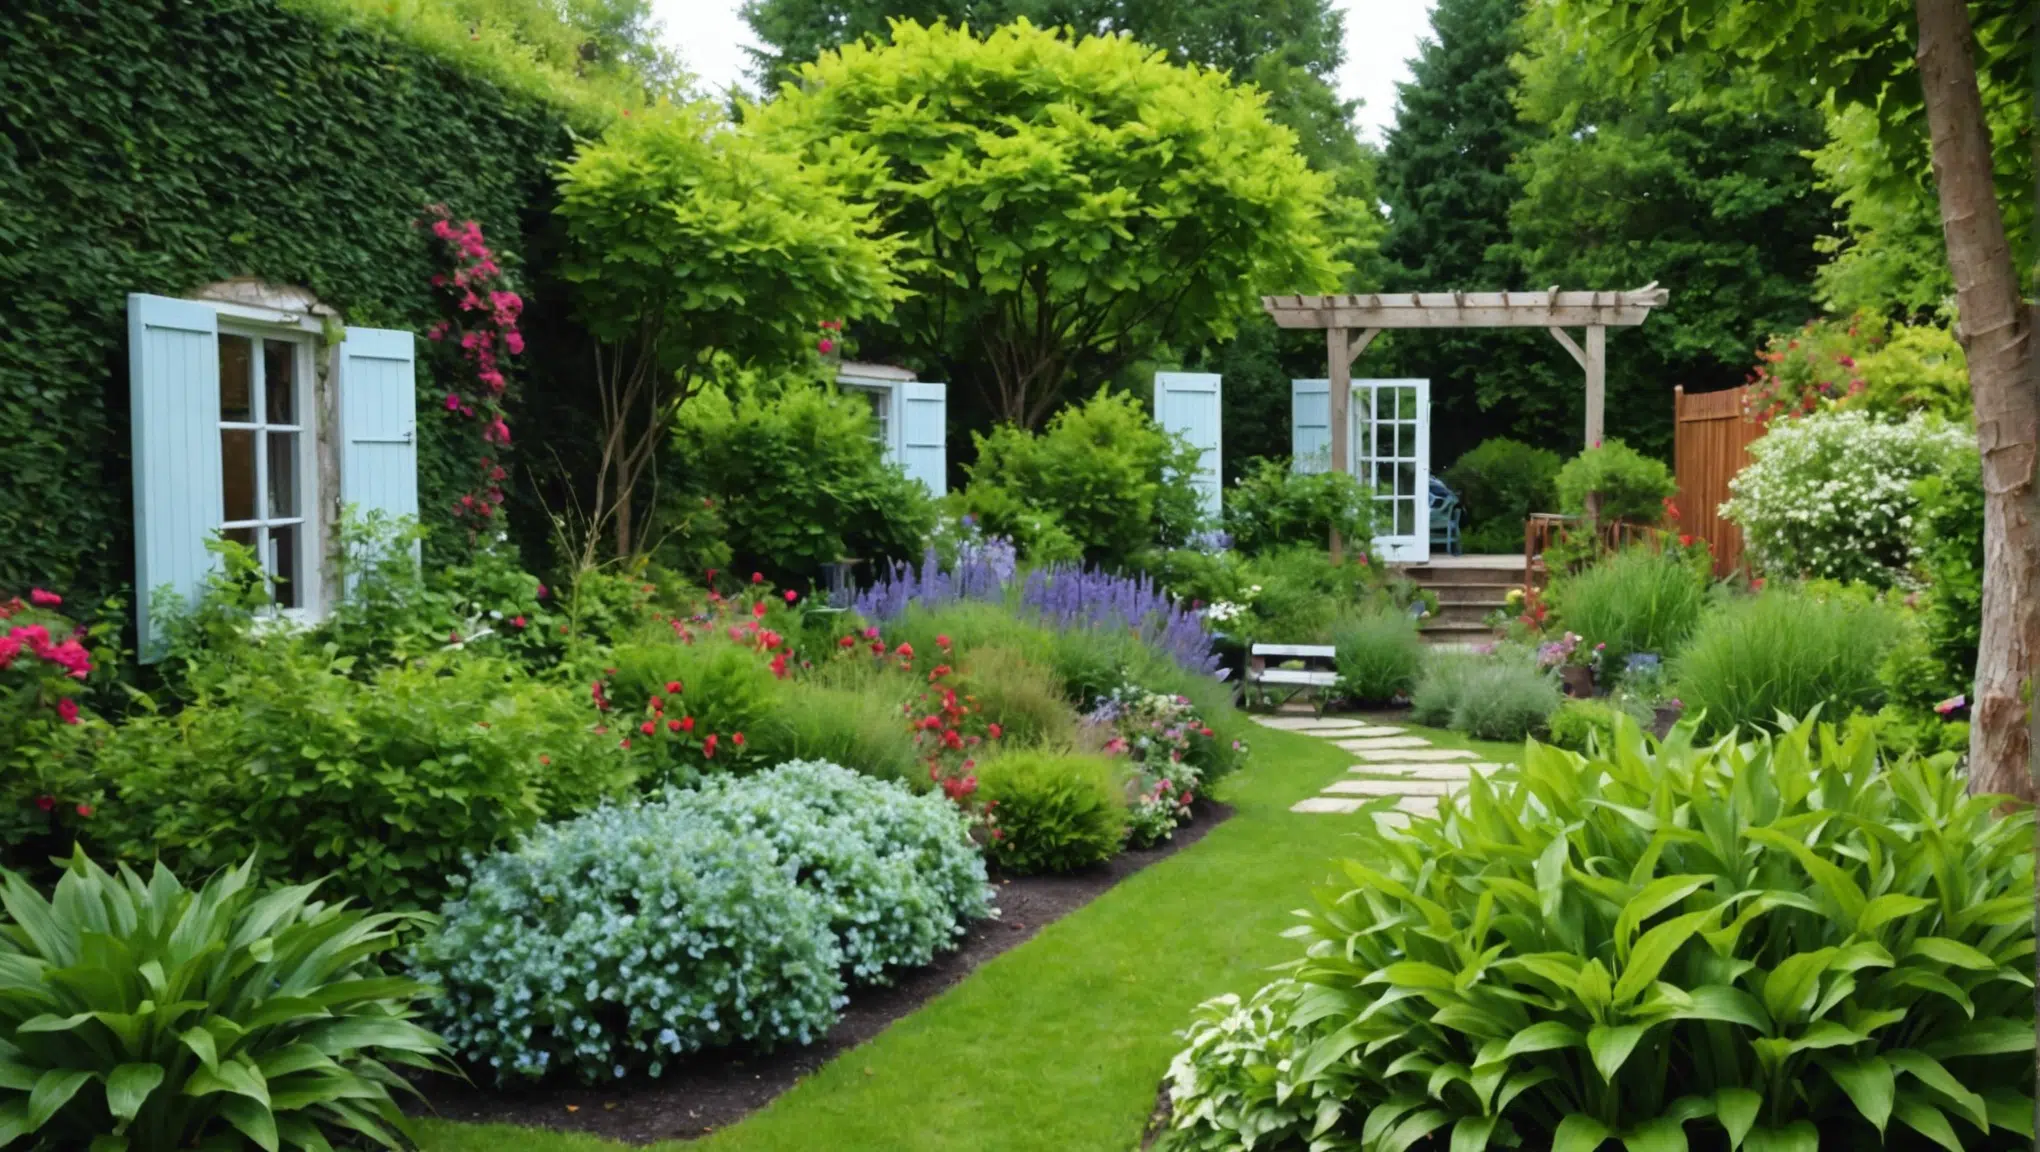 découvrez les 4 engrais secrets pour métamorphoser votre jardin en un véritable paradis avec nos conseils d'experts en jardinage.